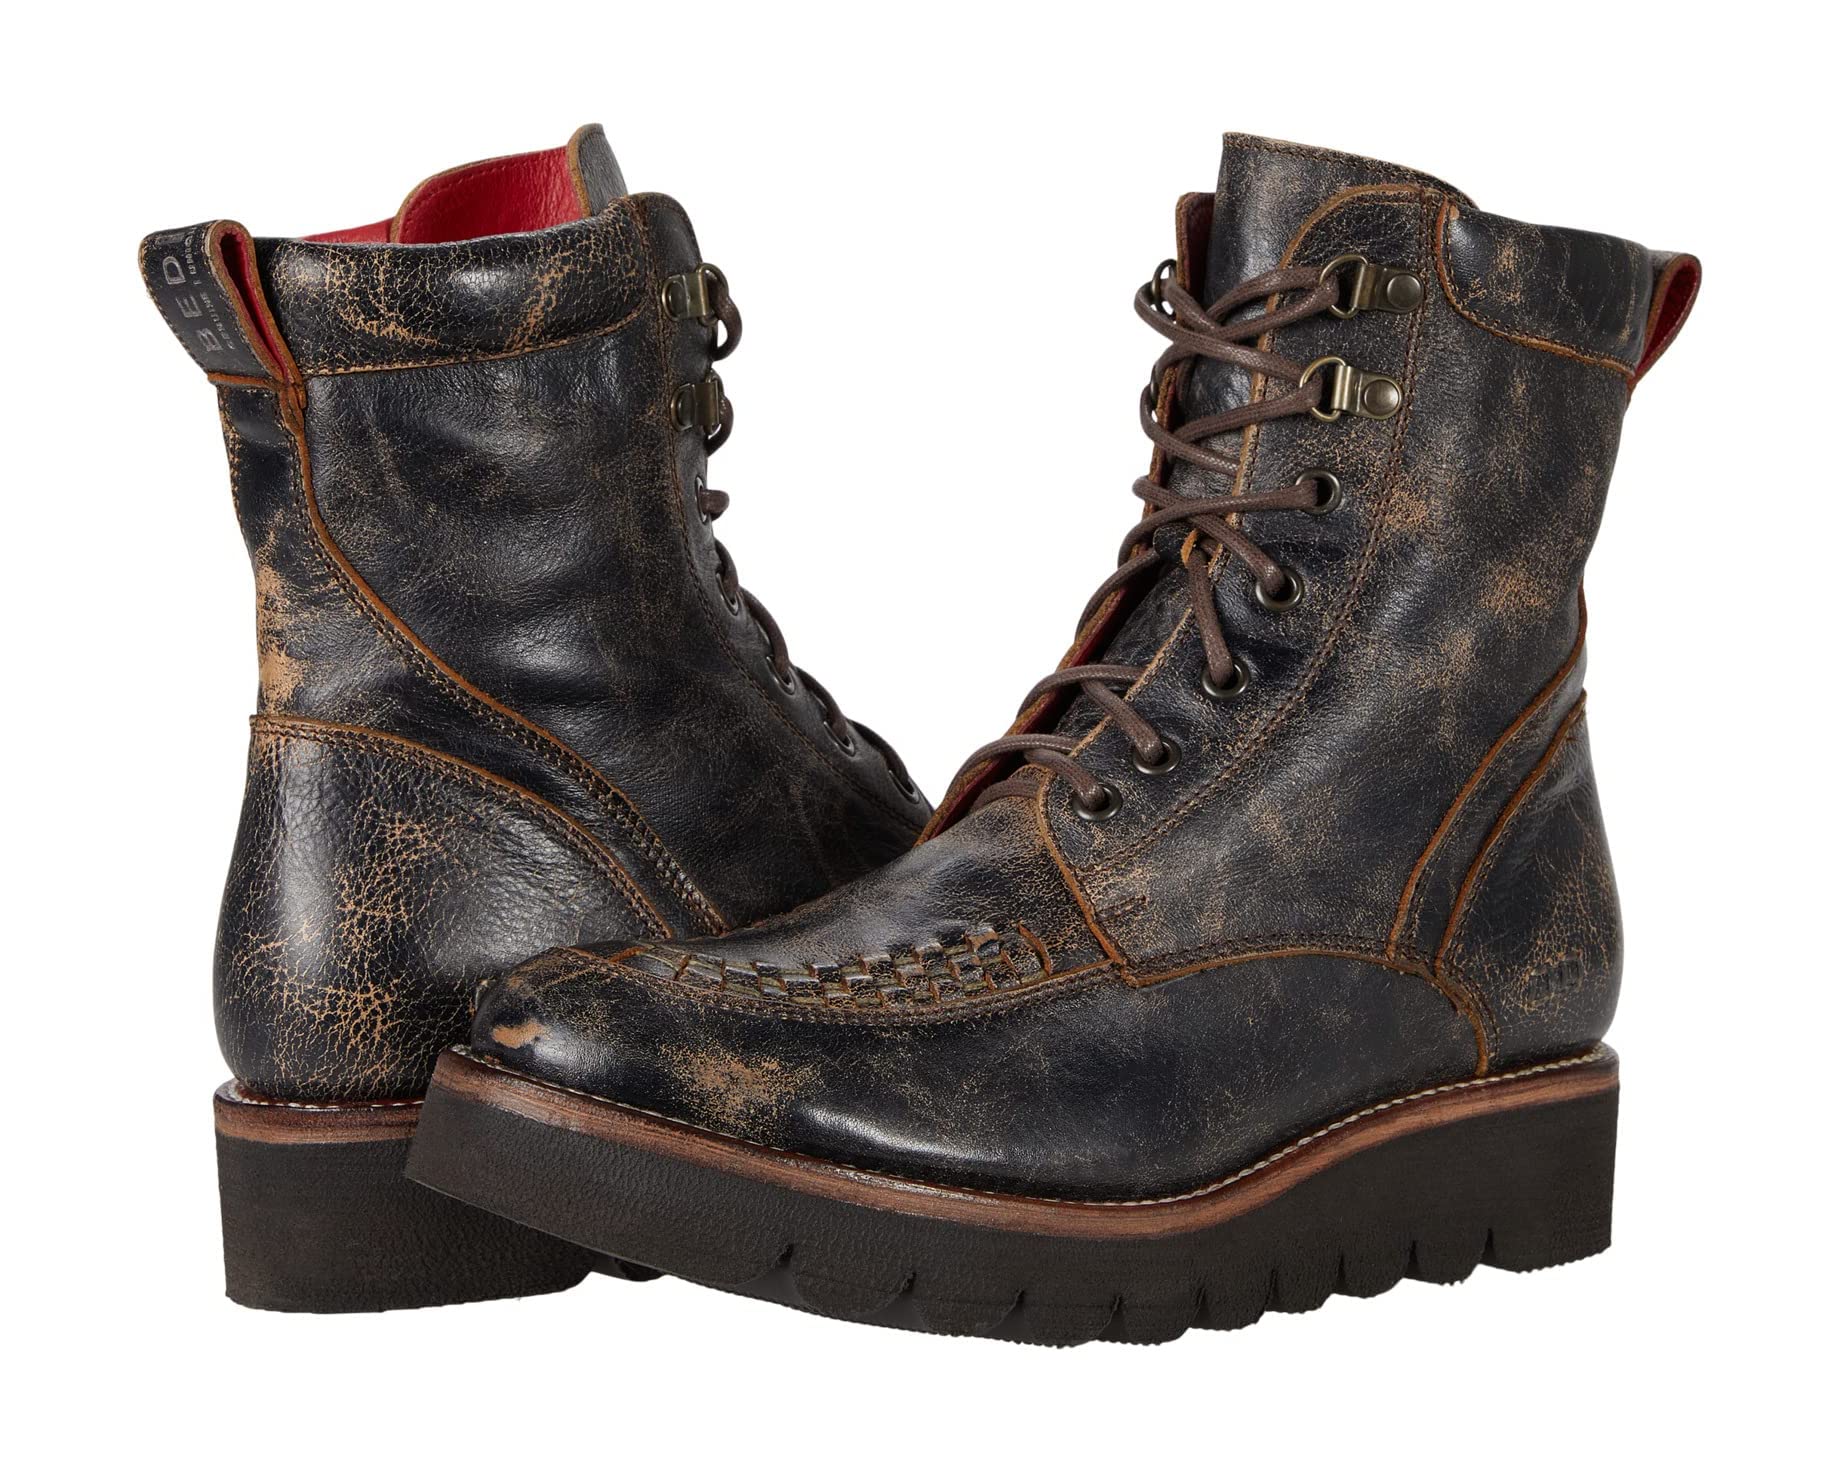 Black boots rust фото 35